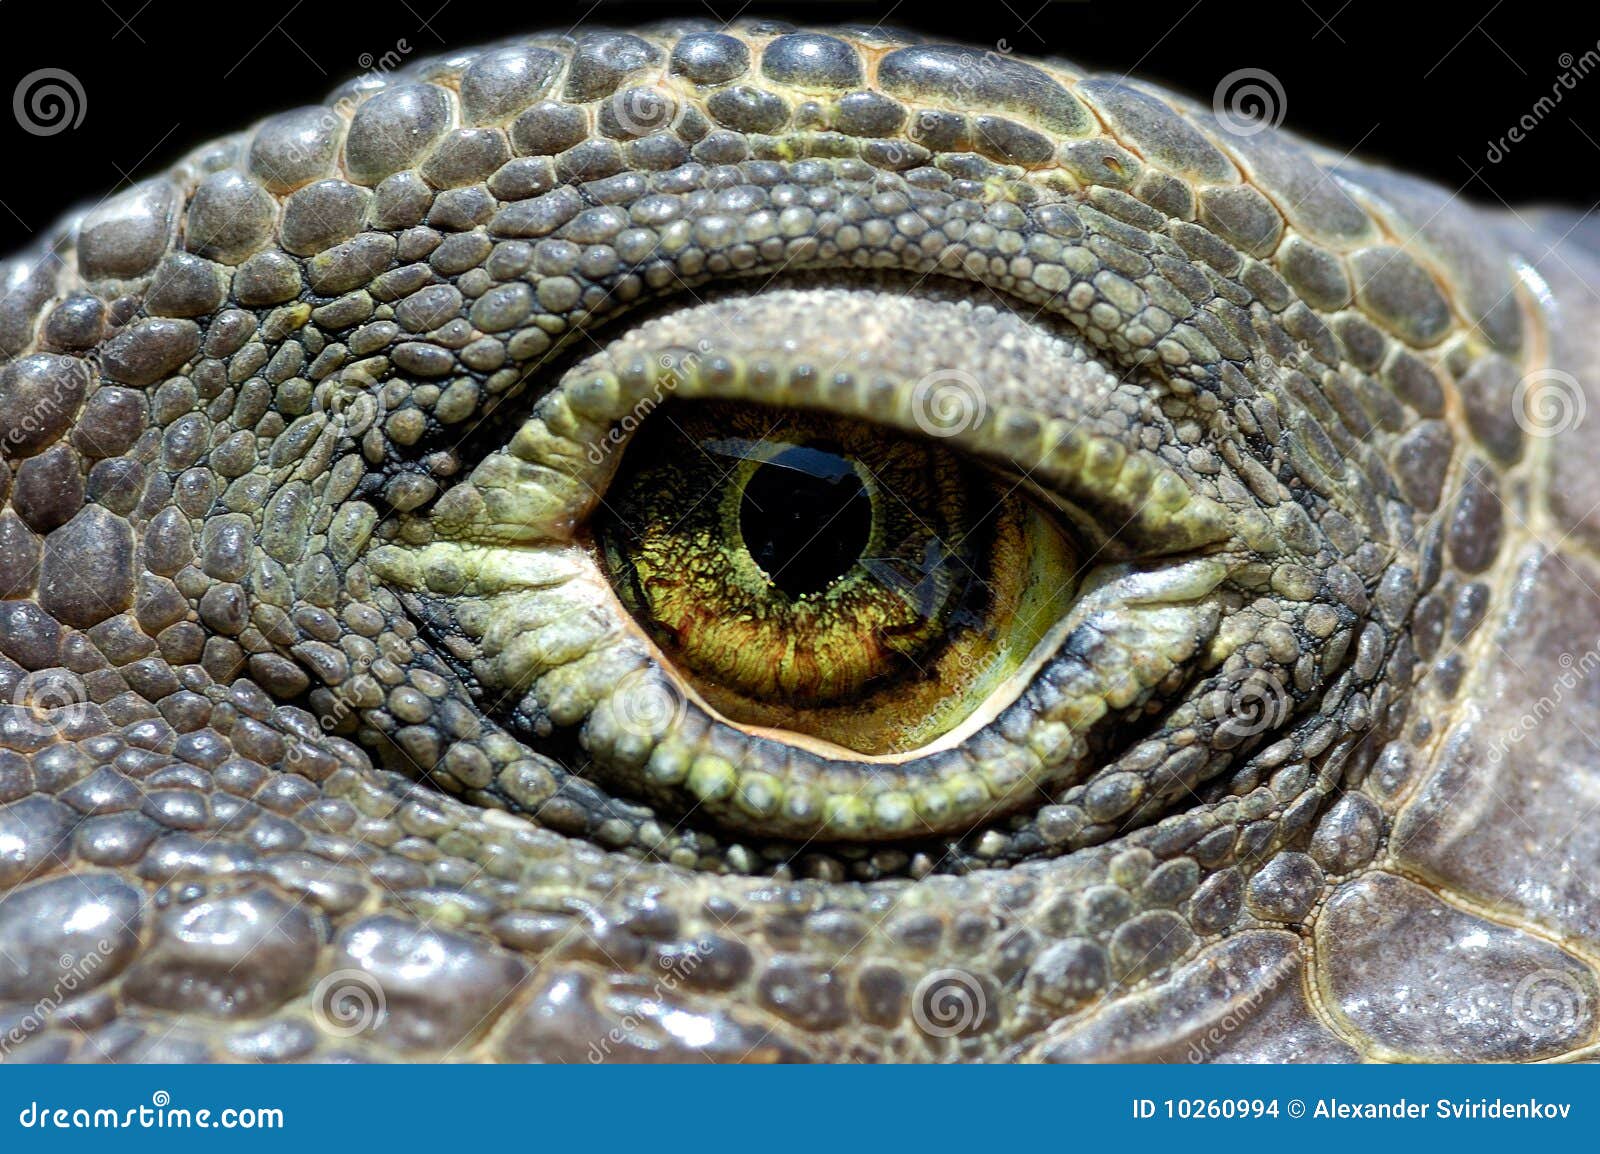 Ojo de la iguana foto de archivo. Imagen de recorrido - 10260994